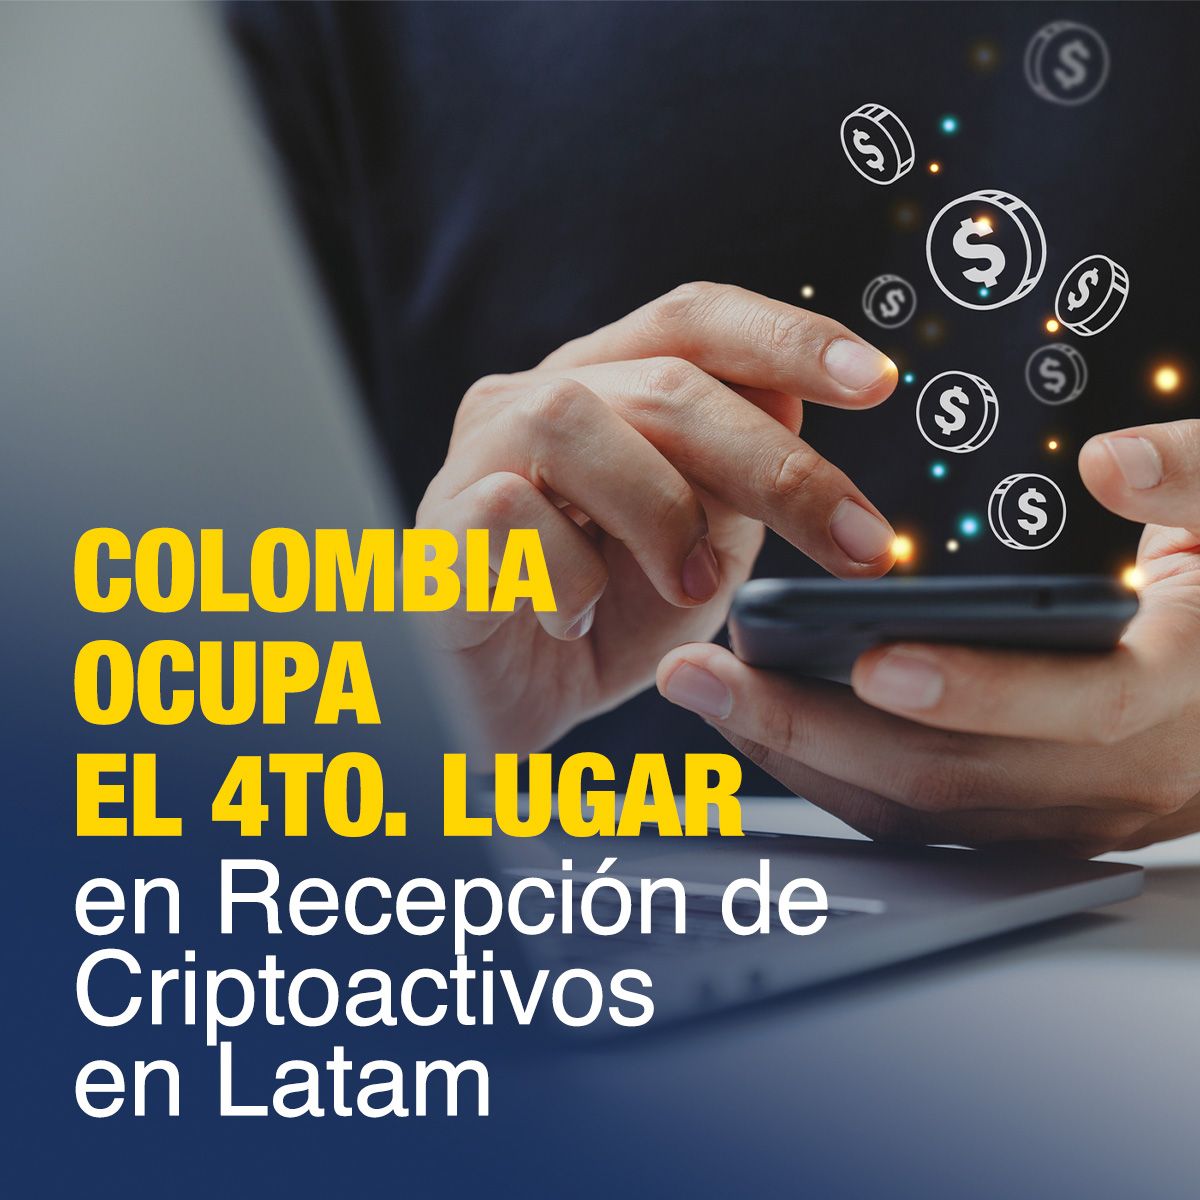 Colombia Ocupa el 4to. Lugar en Recepción de Criptoactivos en Latam